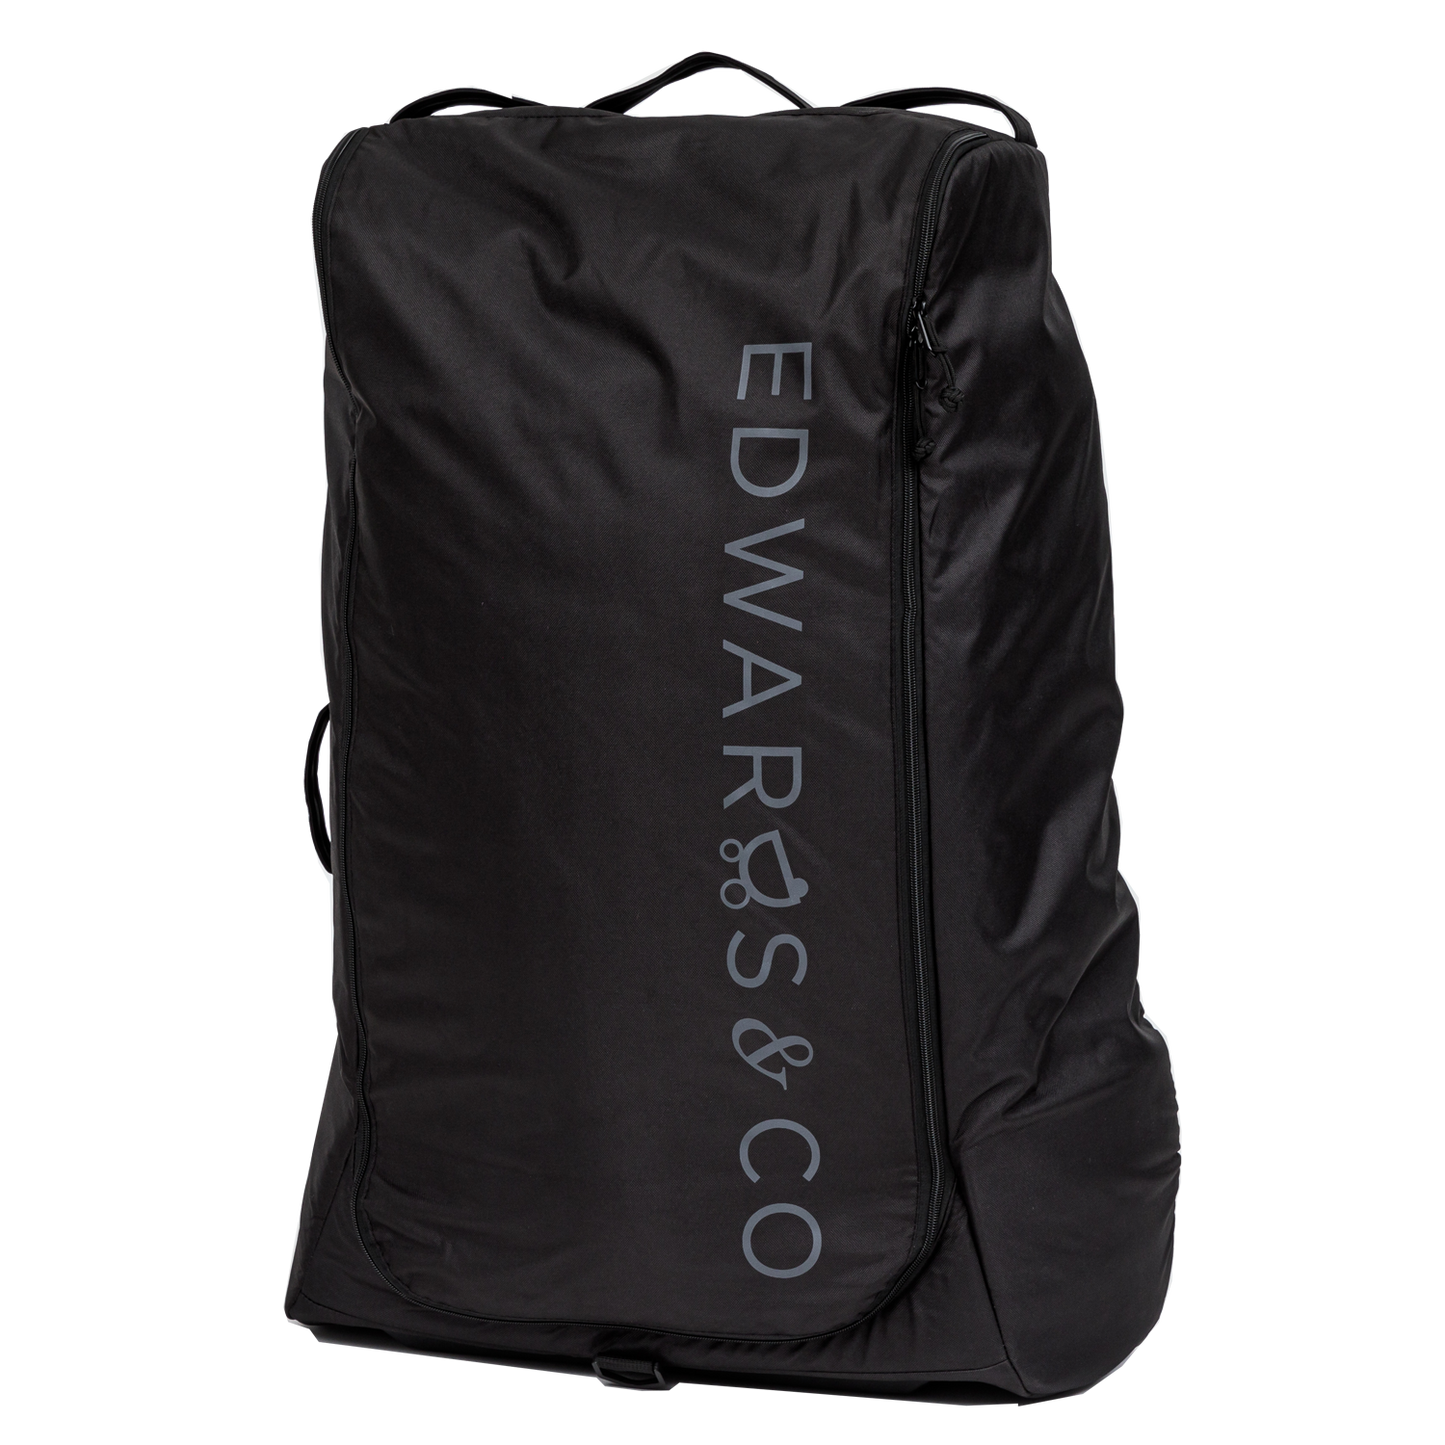 Edwards & Co Stroller Travel Bag V2